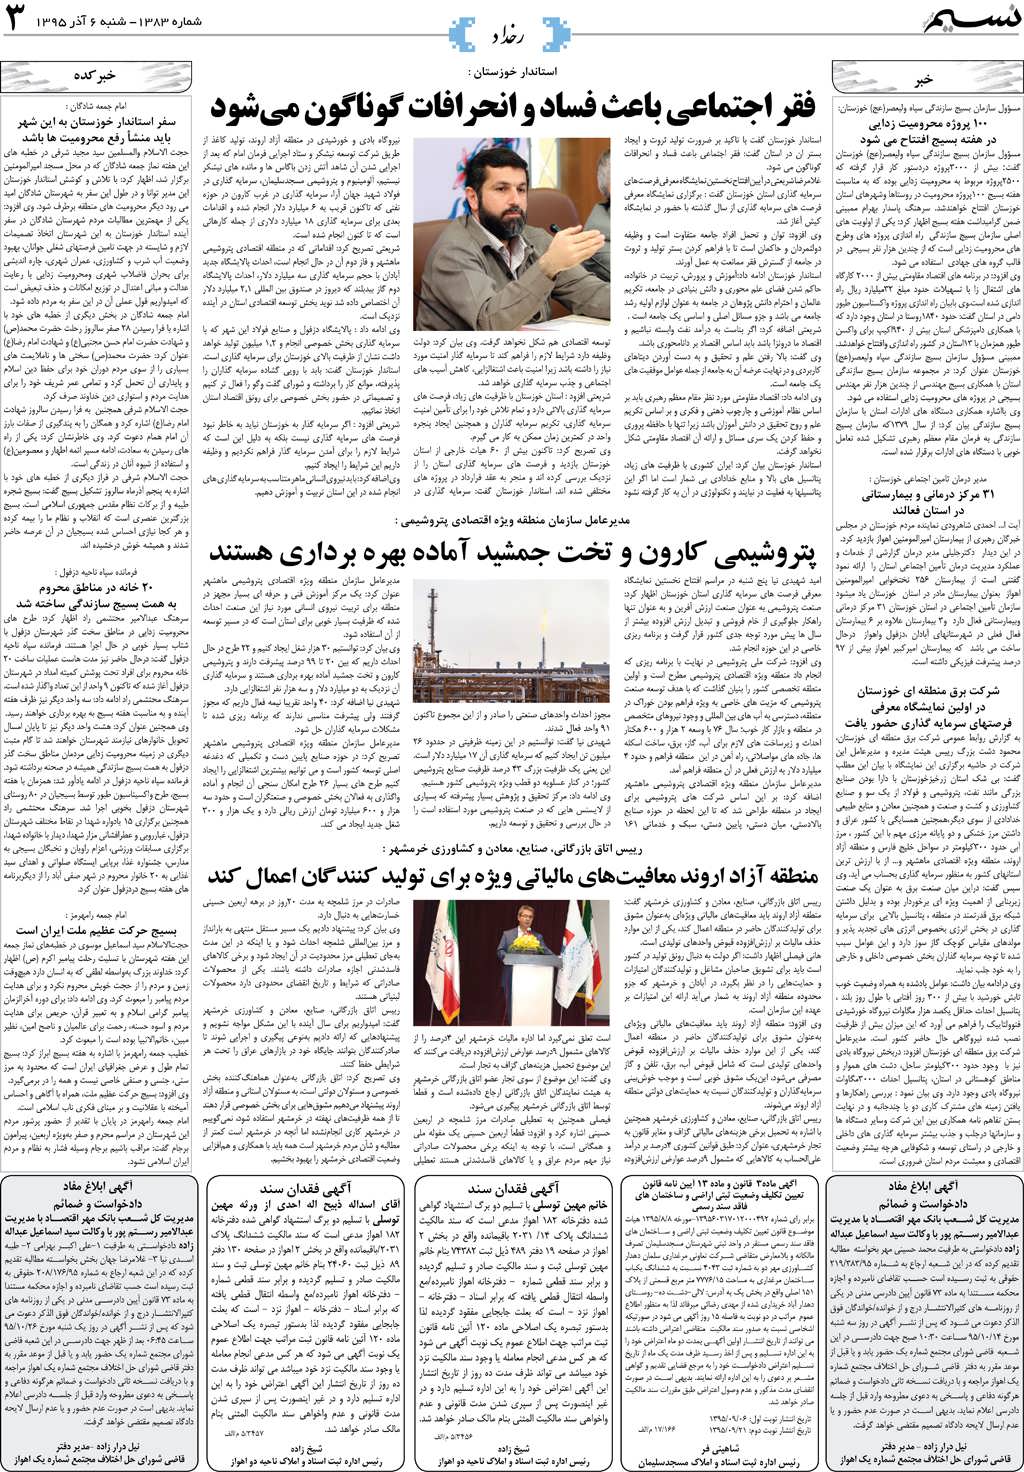 صفحه رخداد روزنامه نسیم شماره 1383